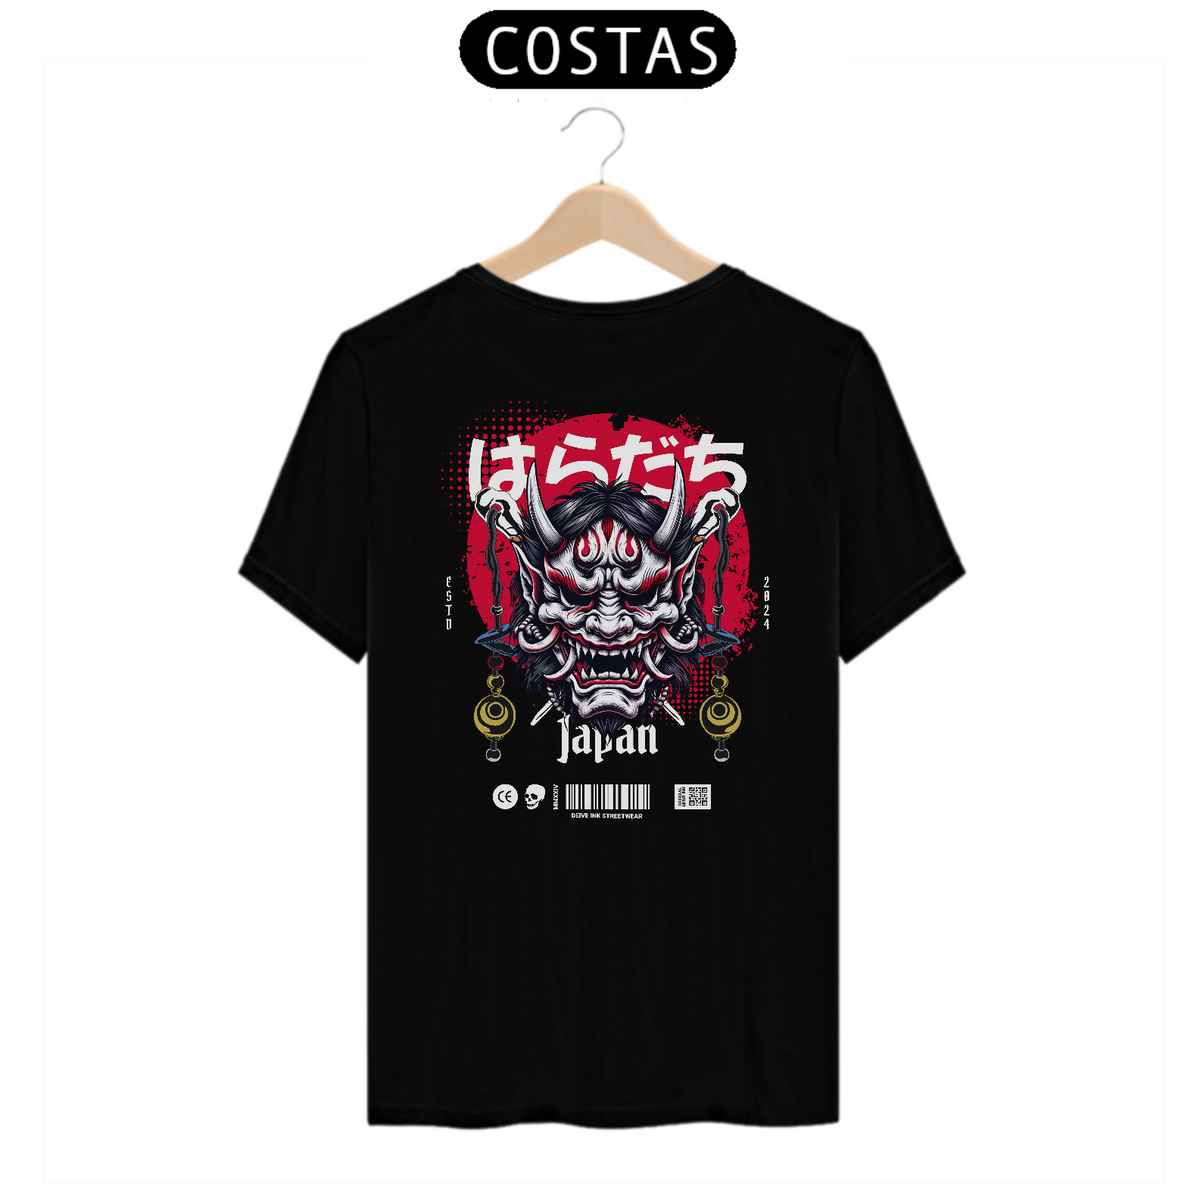 Nome do produto: Camiseta Japan Carranca Streetwear